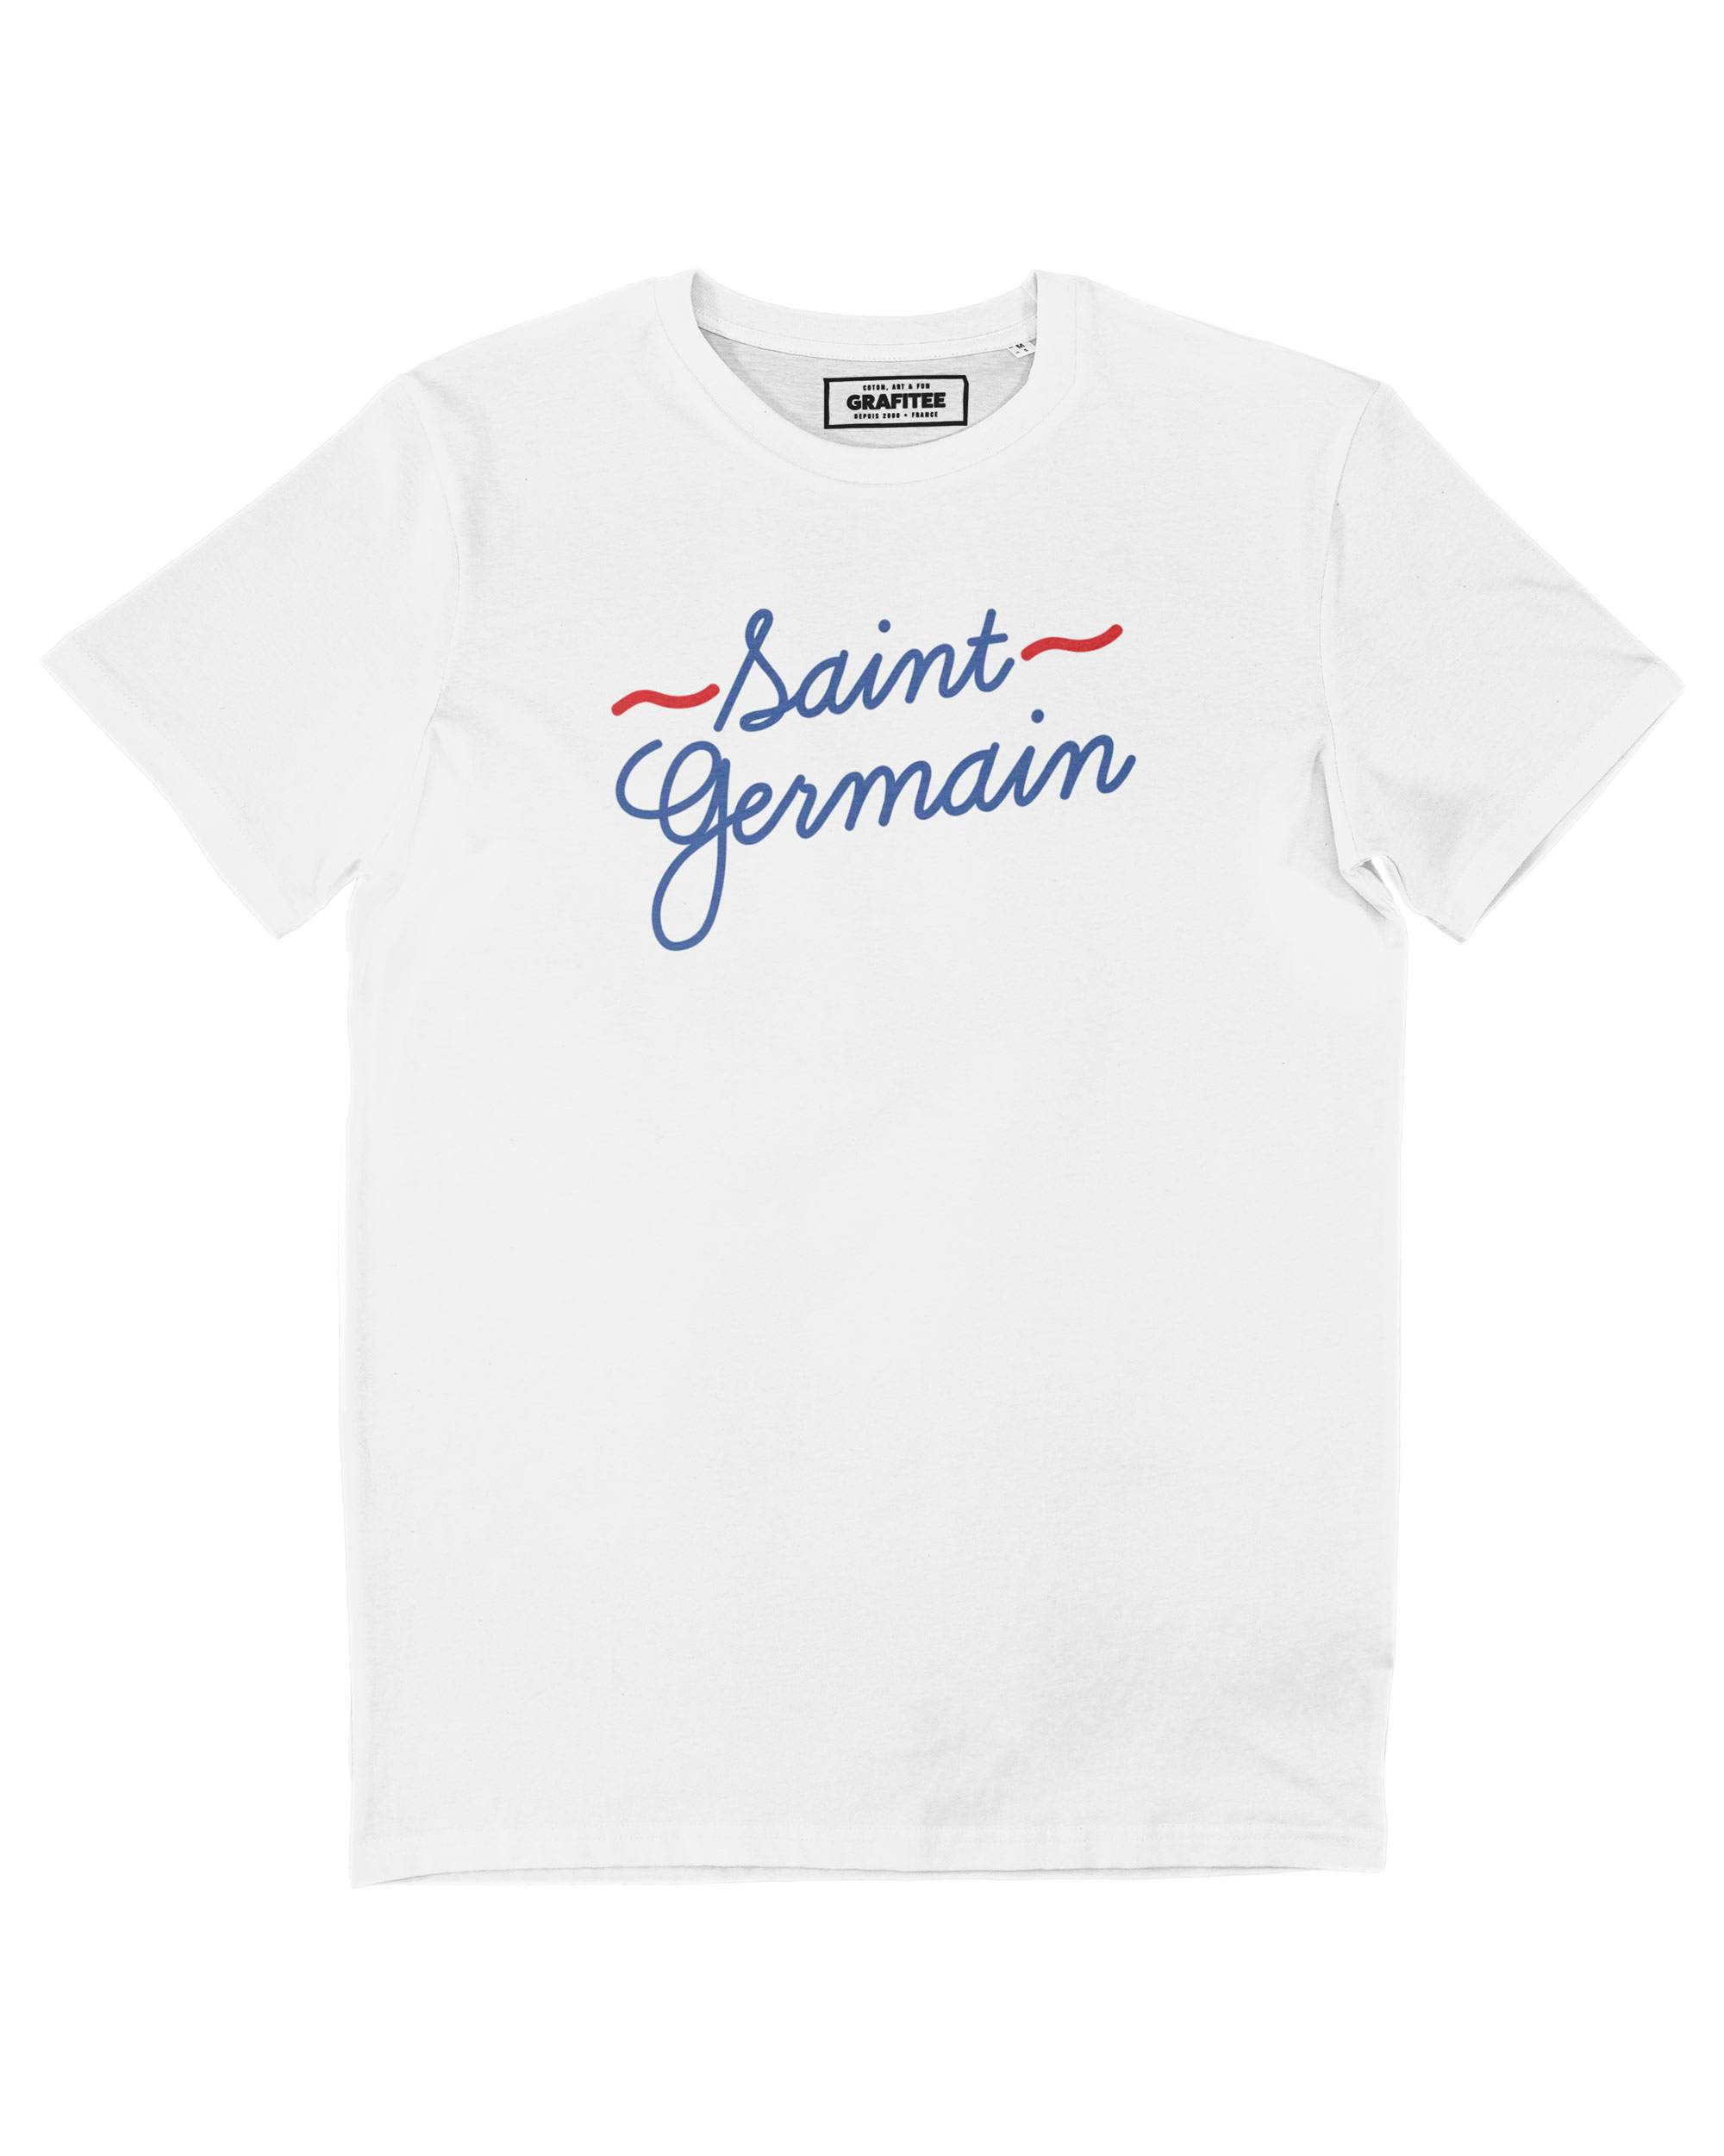 T-shirt Saint Germain Grafitee